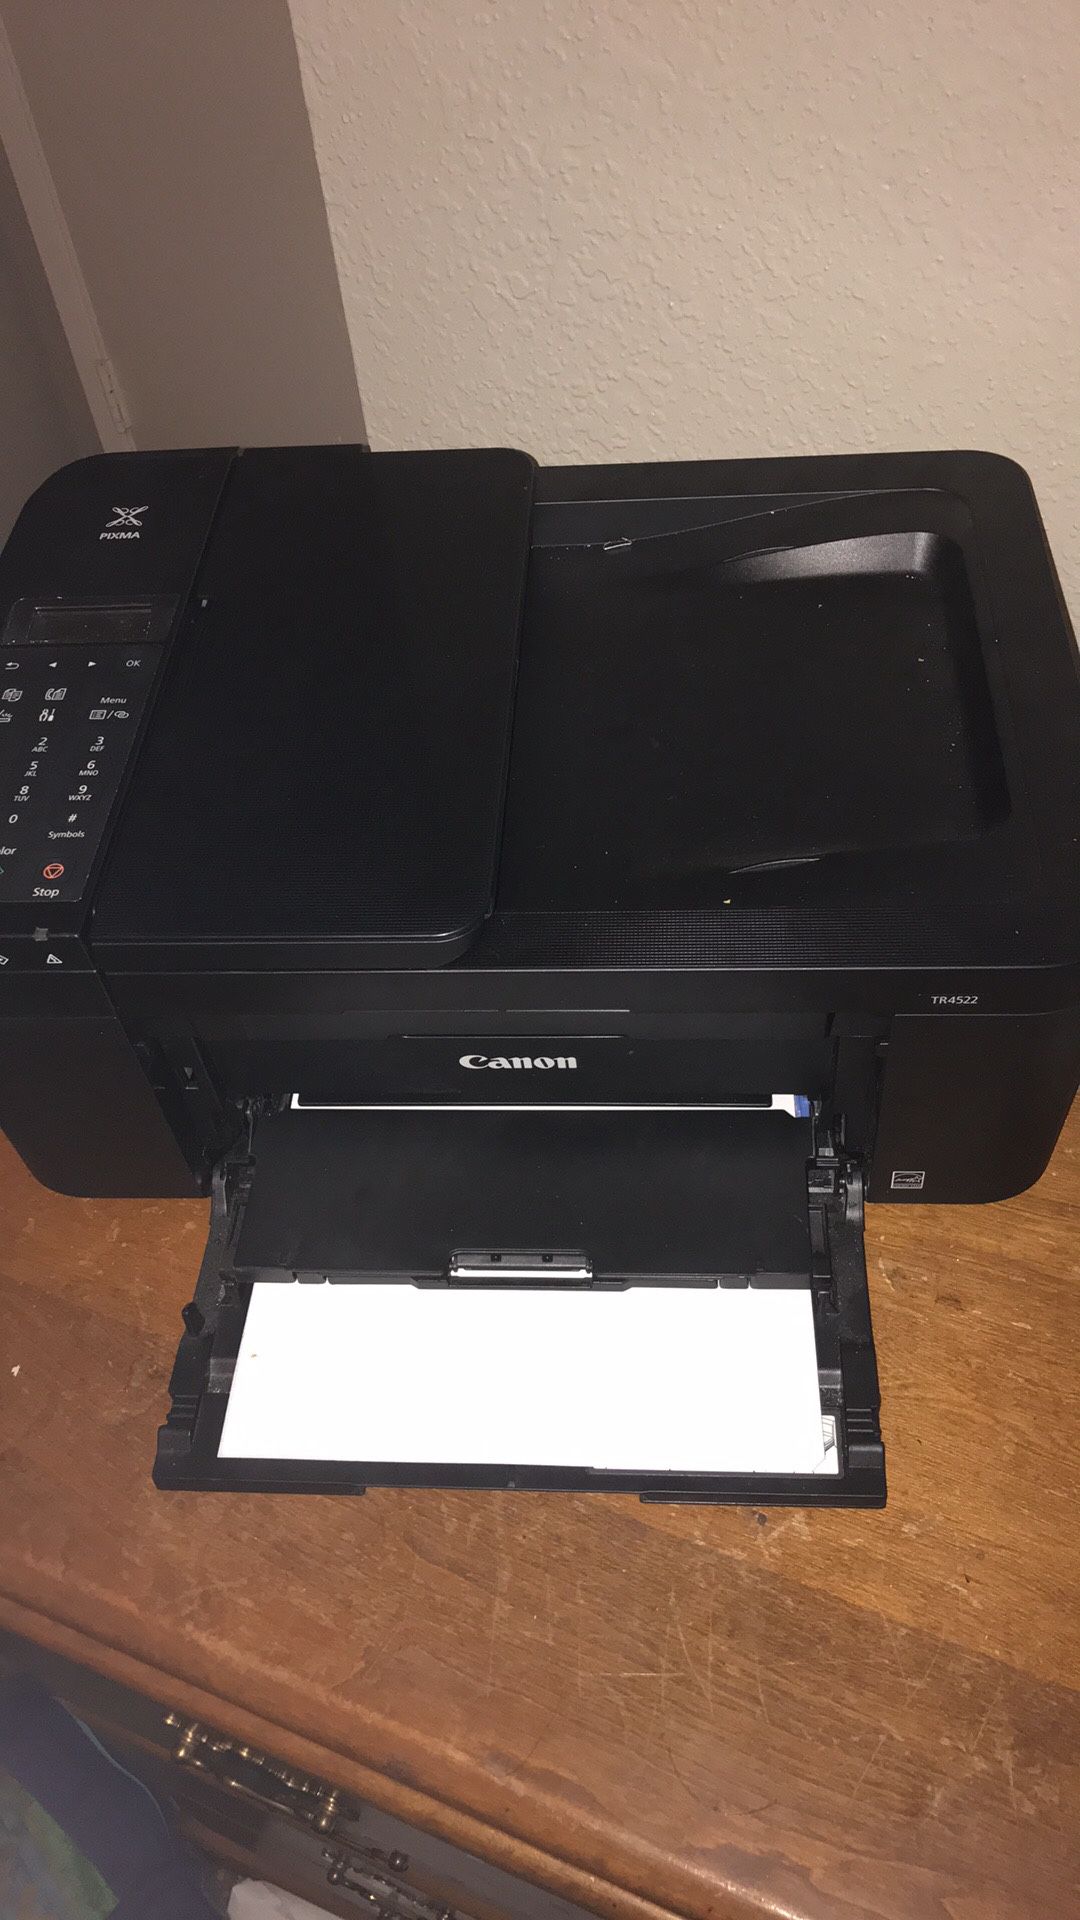 Cannon printer black and color printer